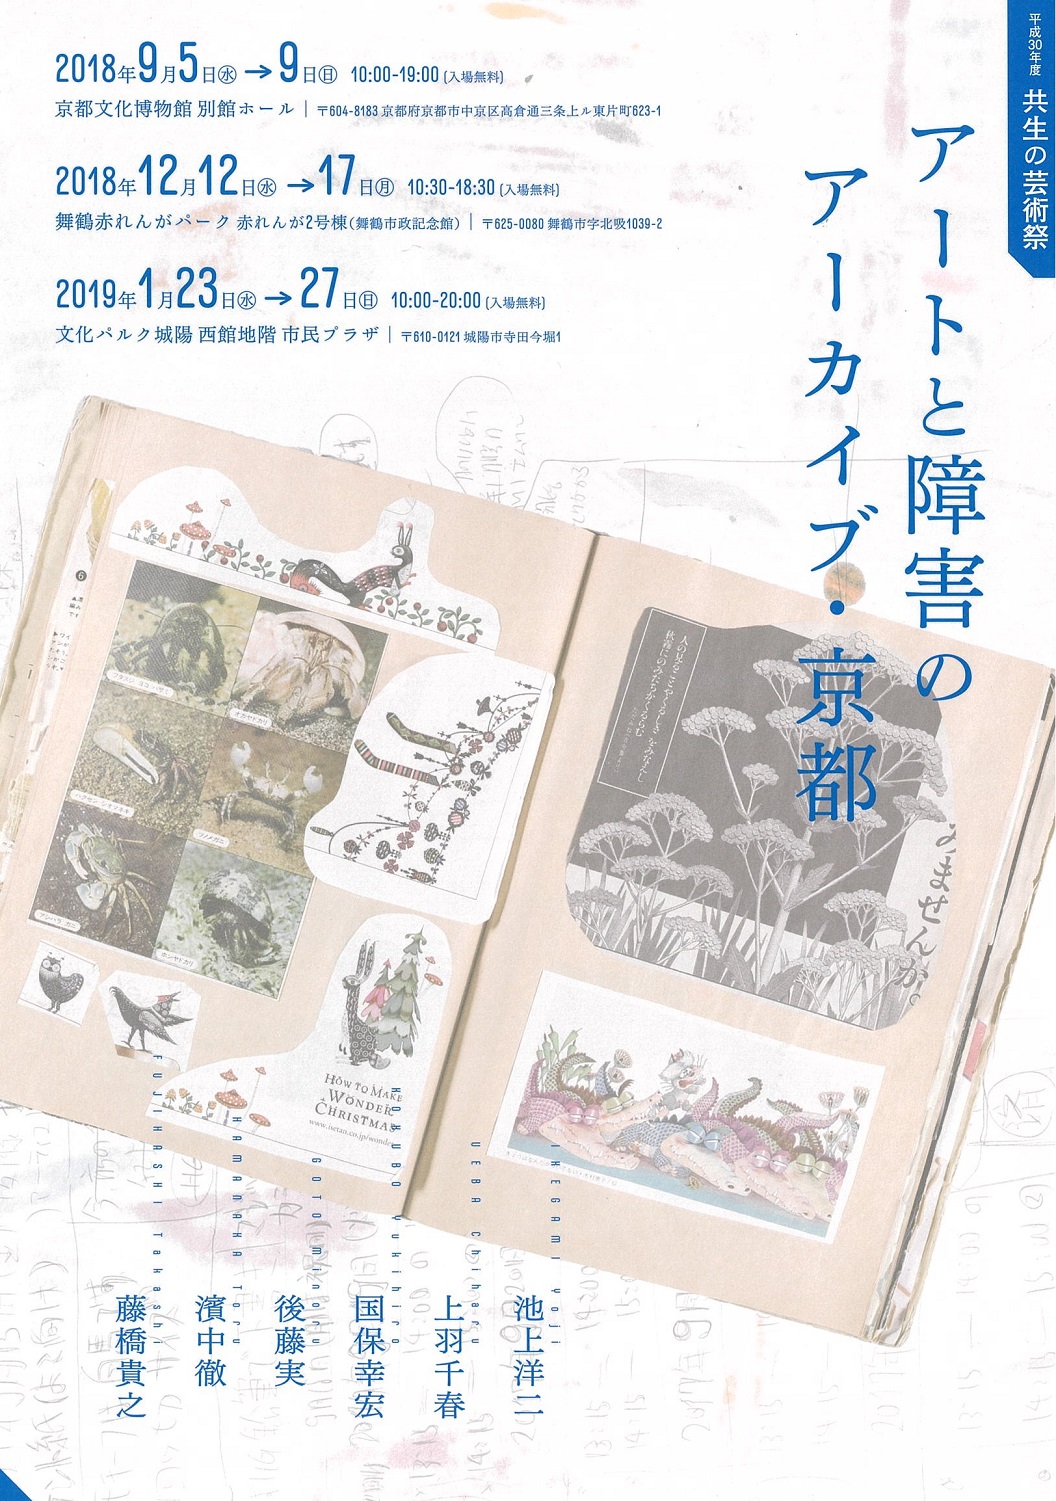 					平成30年度共生の芸術祭
「アートと障害のアーカイブ・京都」	